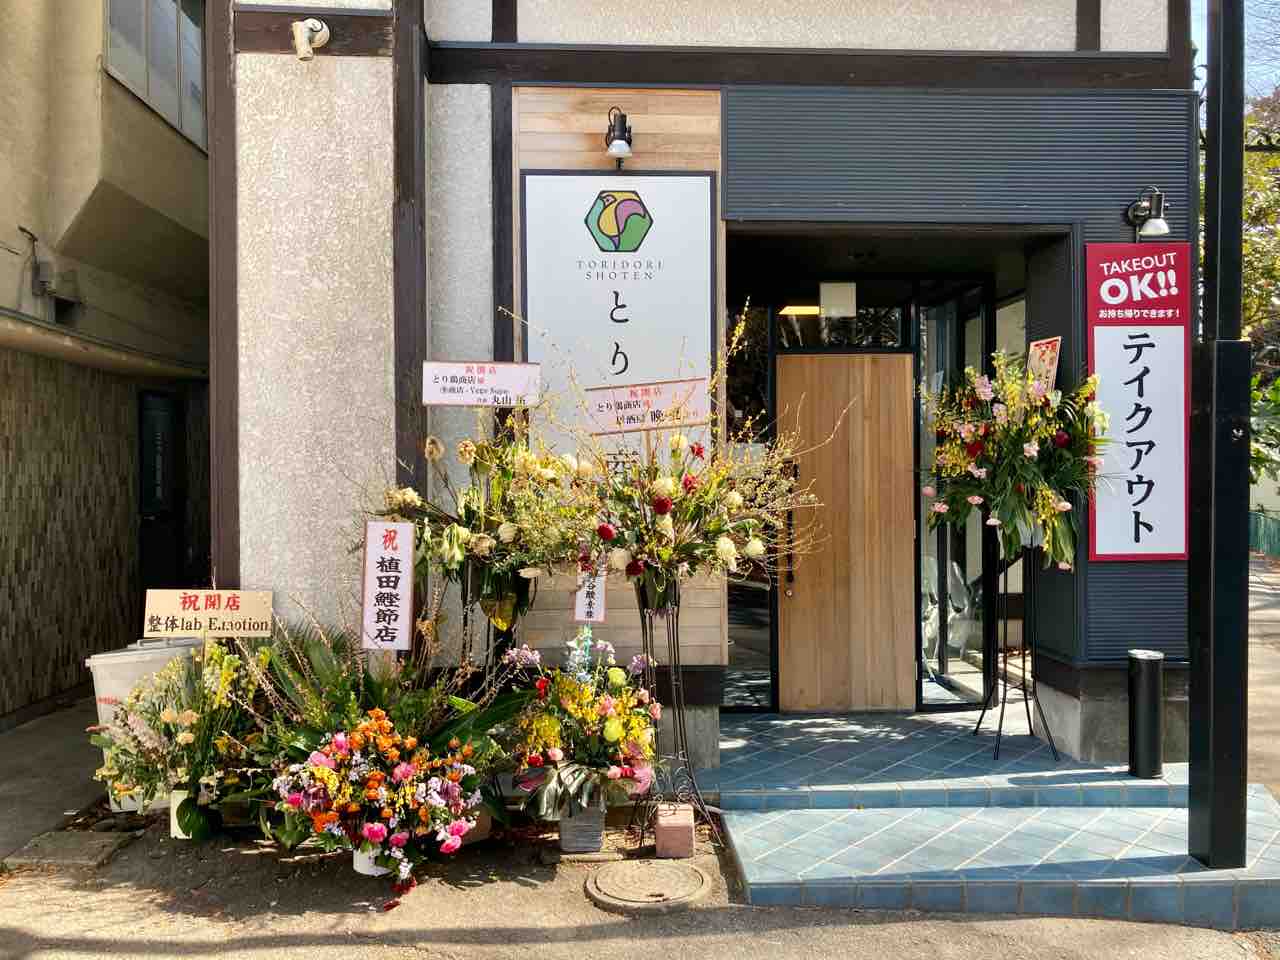 とり鶏商店 松本市 ホーク ネジ夫 の挑戦